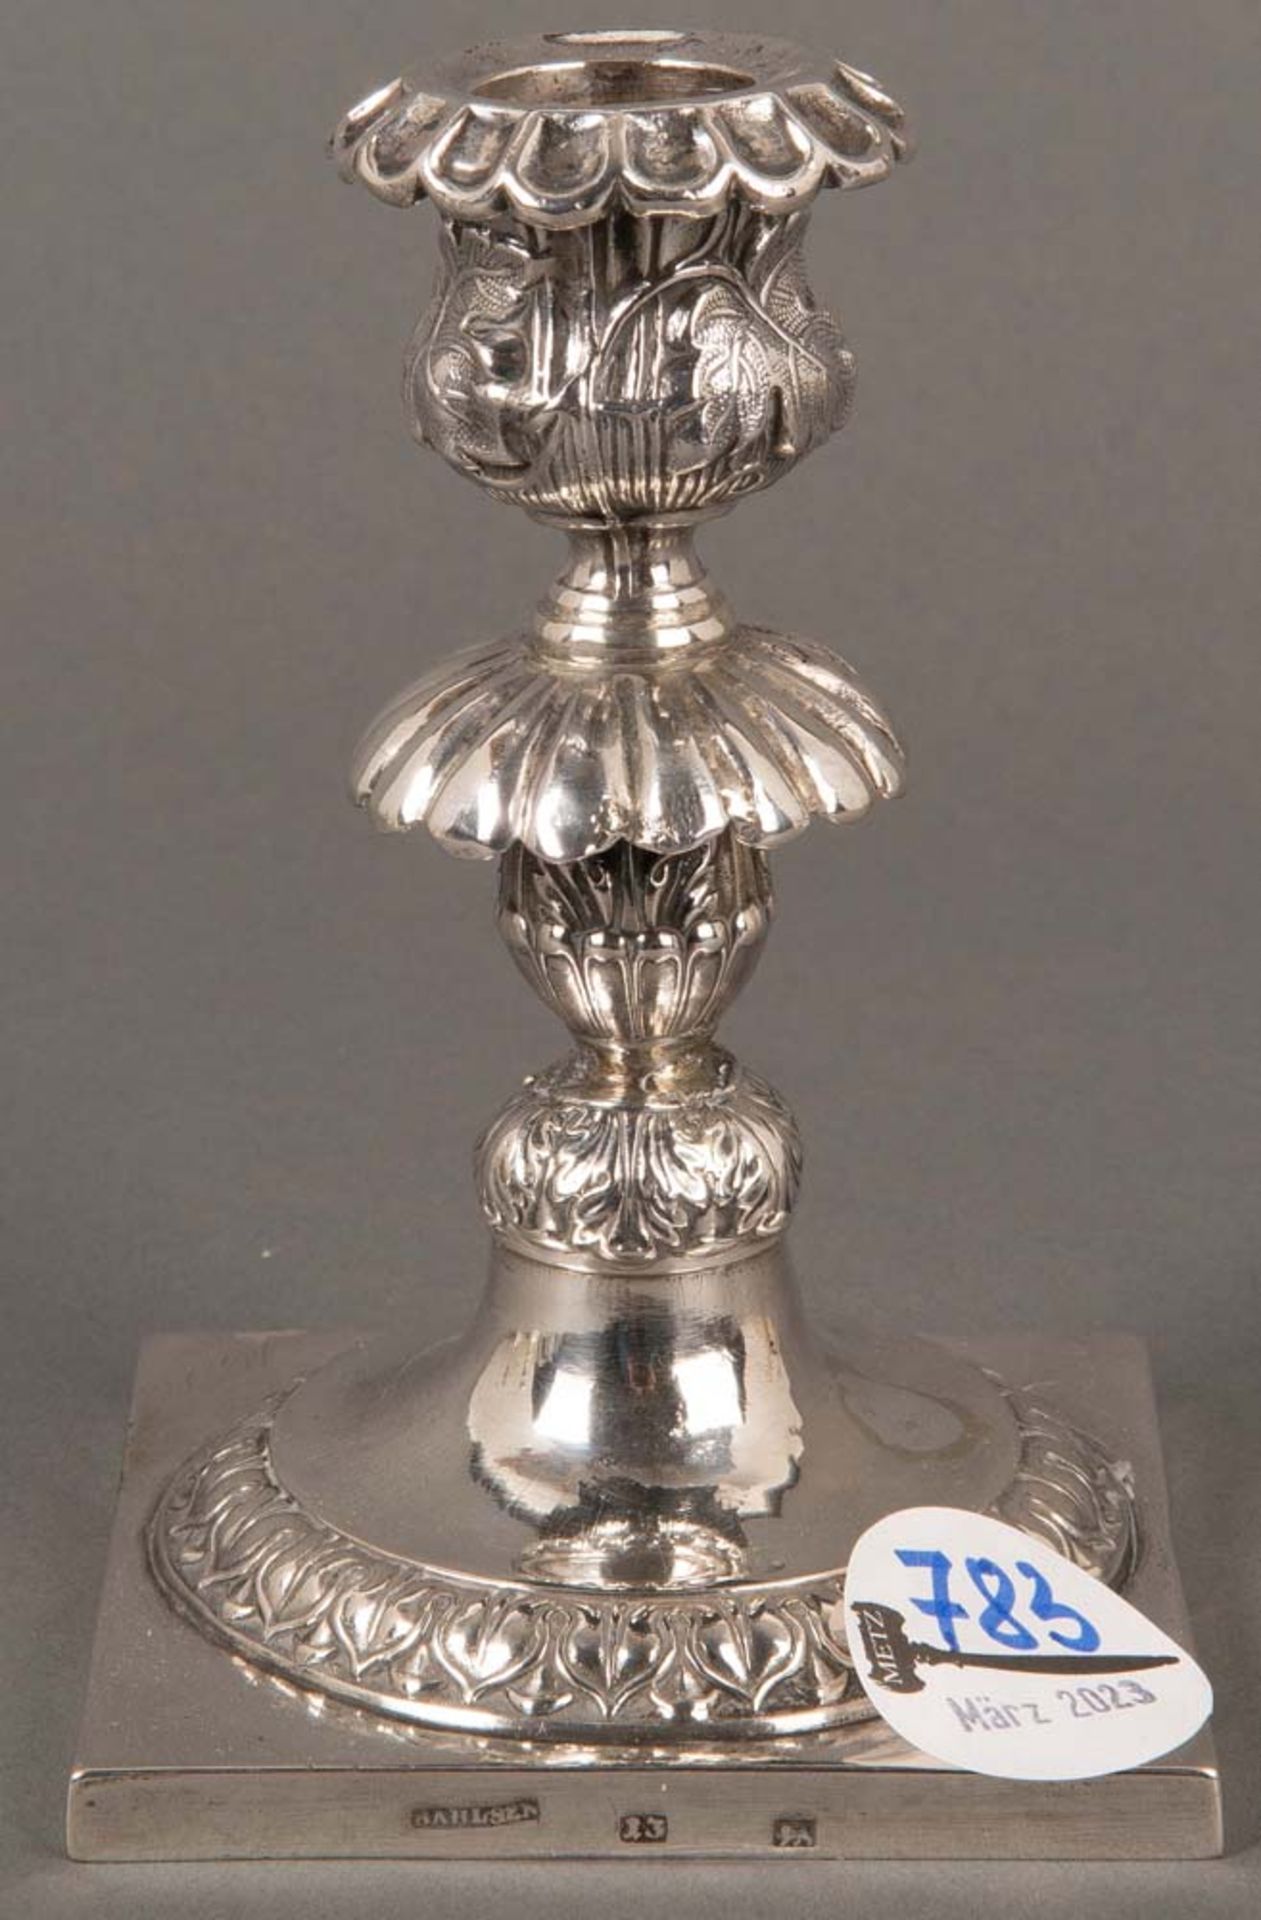 Leuchter. Wohl Lüneburg 19. Jh. Silber, 13-lötig, ca. 159 g, seitlich gepunzt mit Meistermarke